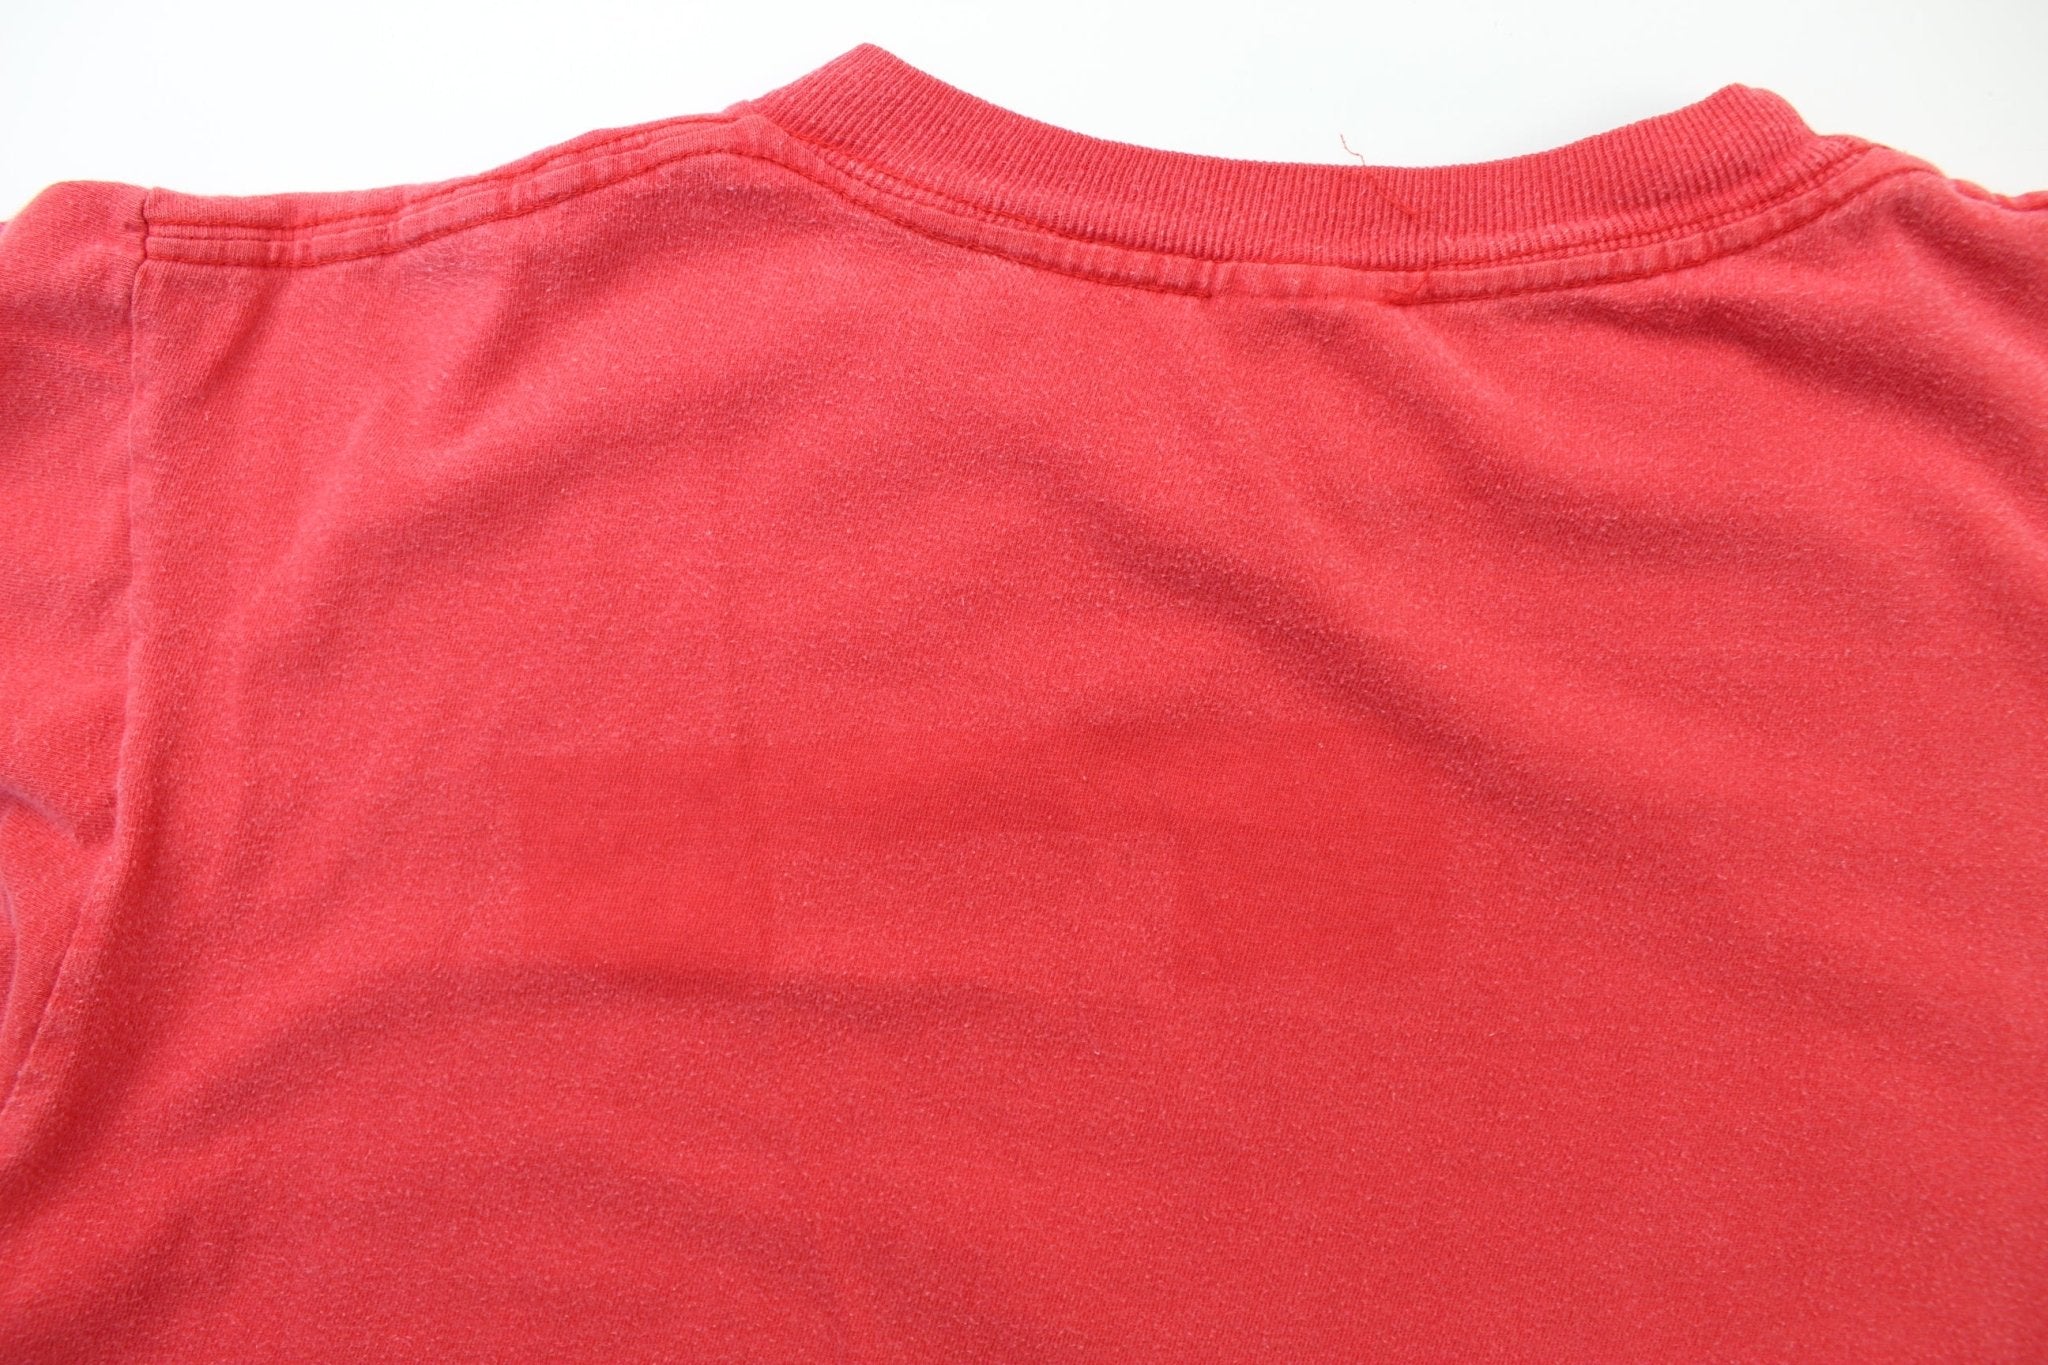 1995 Cincinnati Reds Logo T-Shirt - ThriftedThreads.com